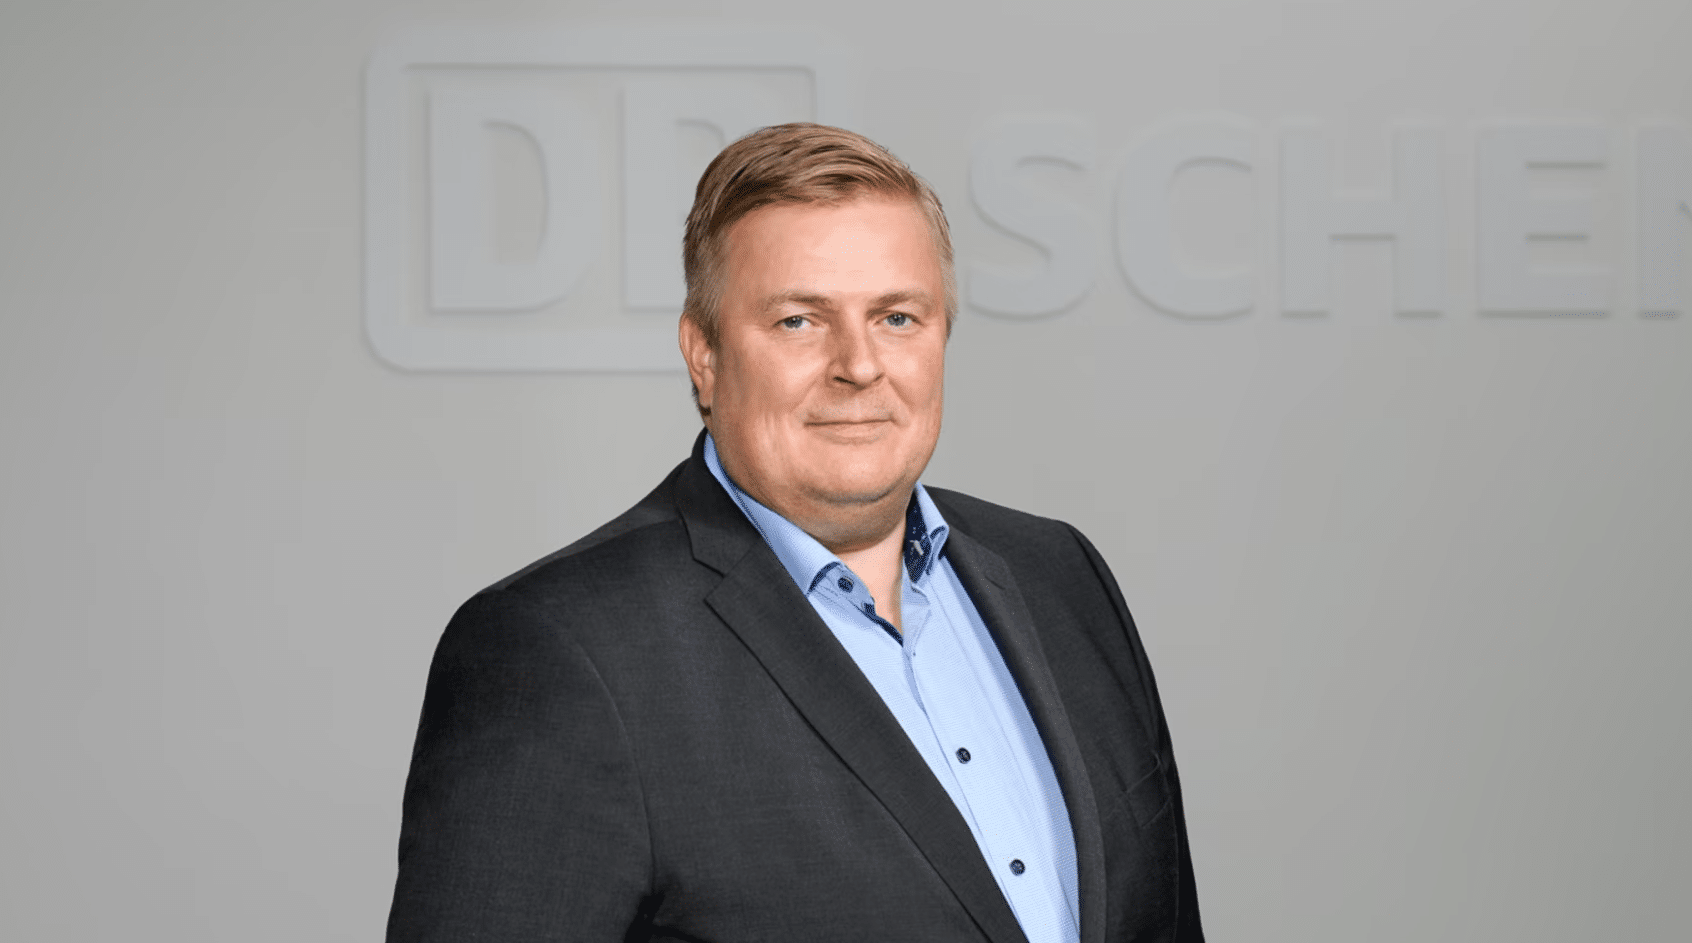 DB Schenker samler de nordiske markedene i Cluster Nordics